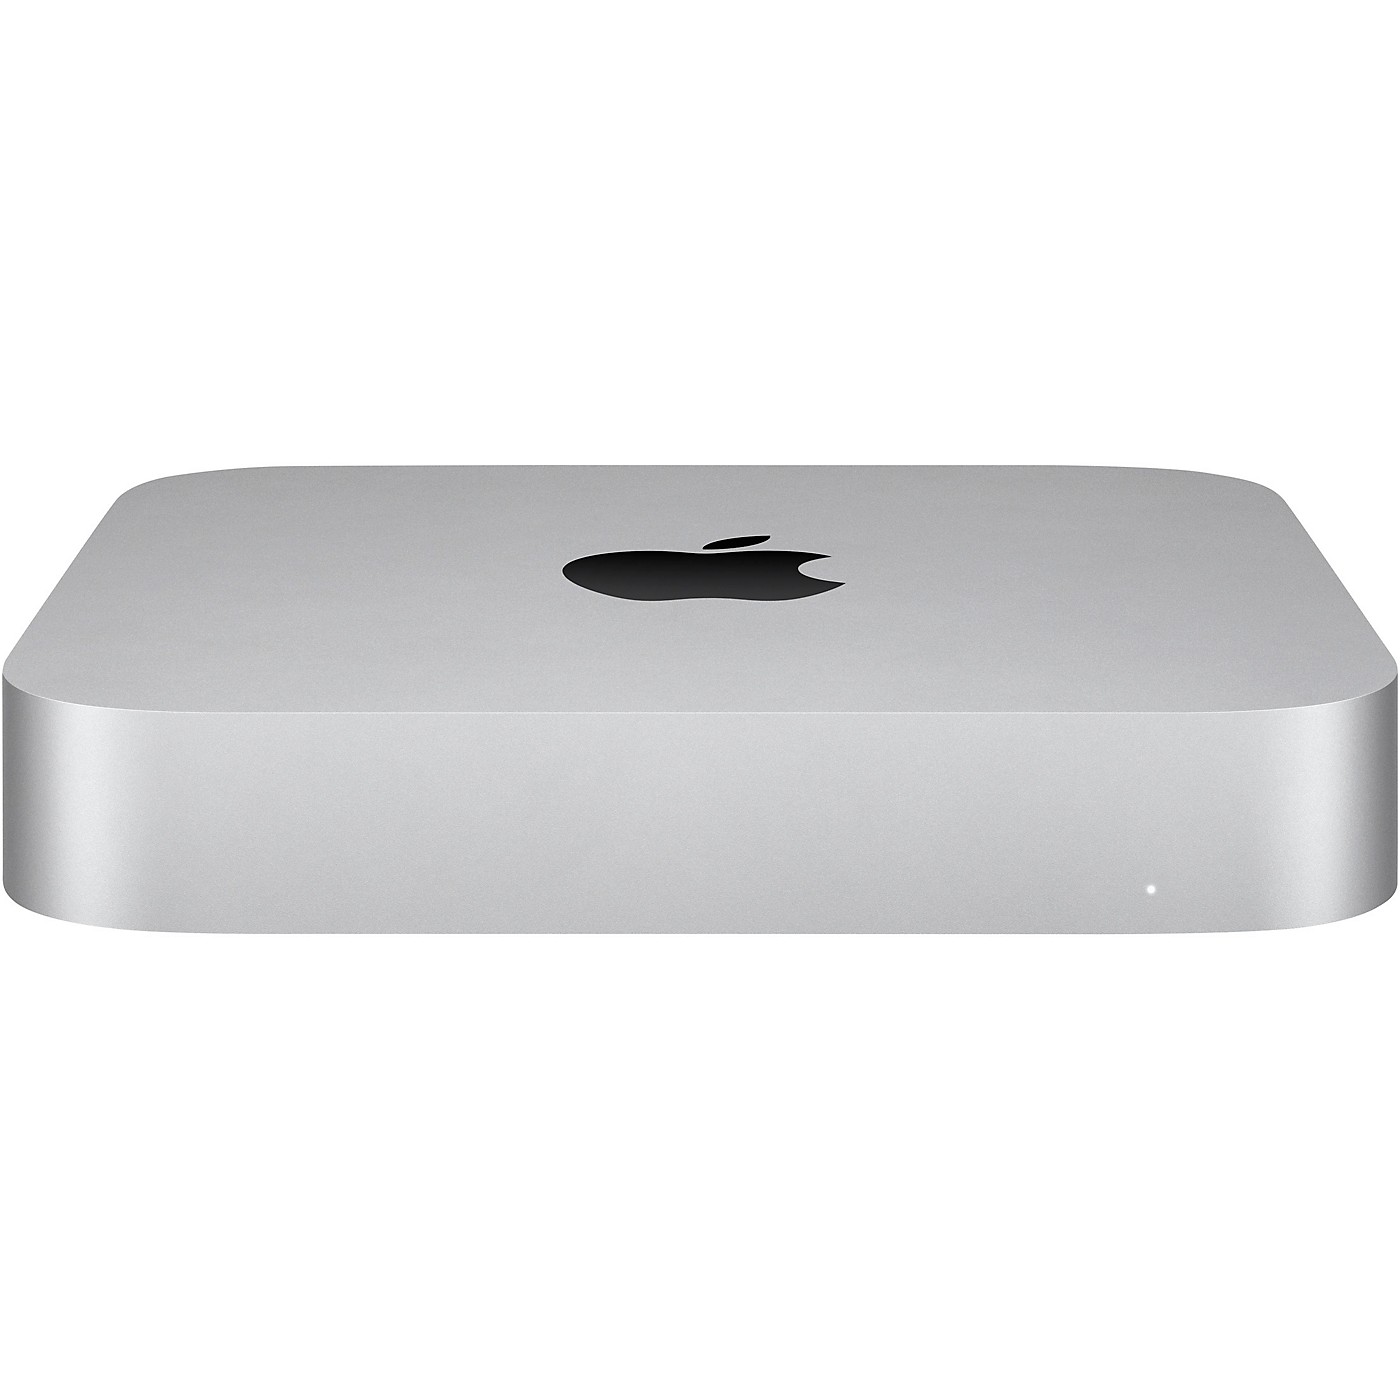 Apple Mac mini 3.2GHz M1 8 CORE 8GB 256GB SSD thumbnail